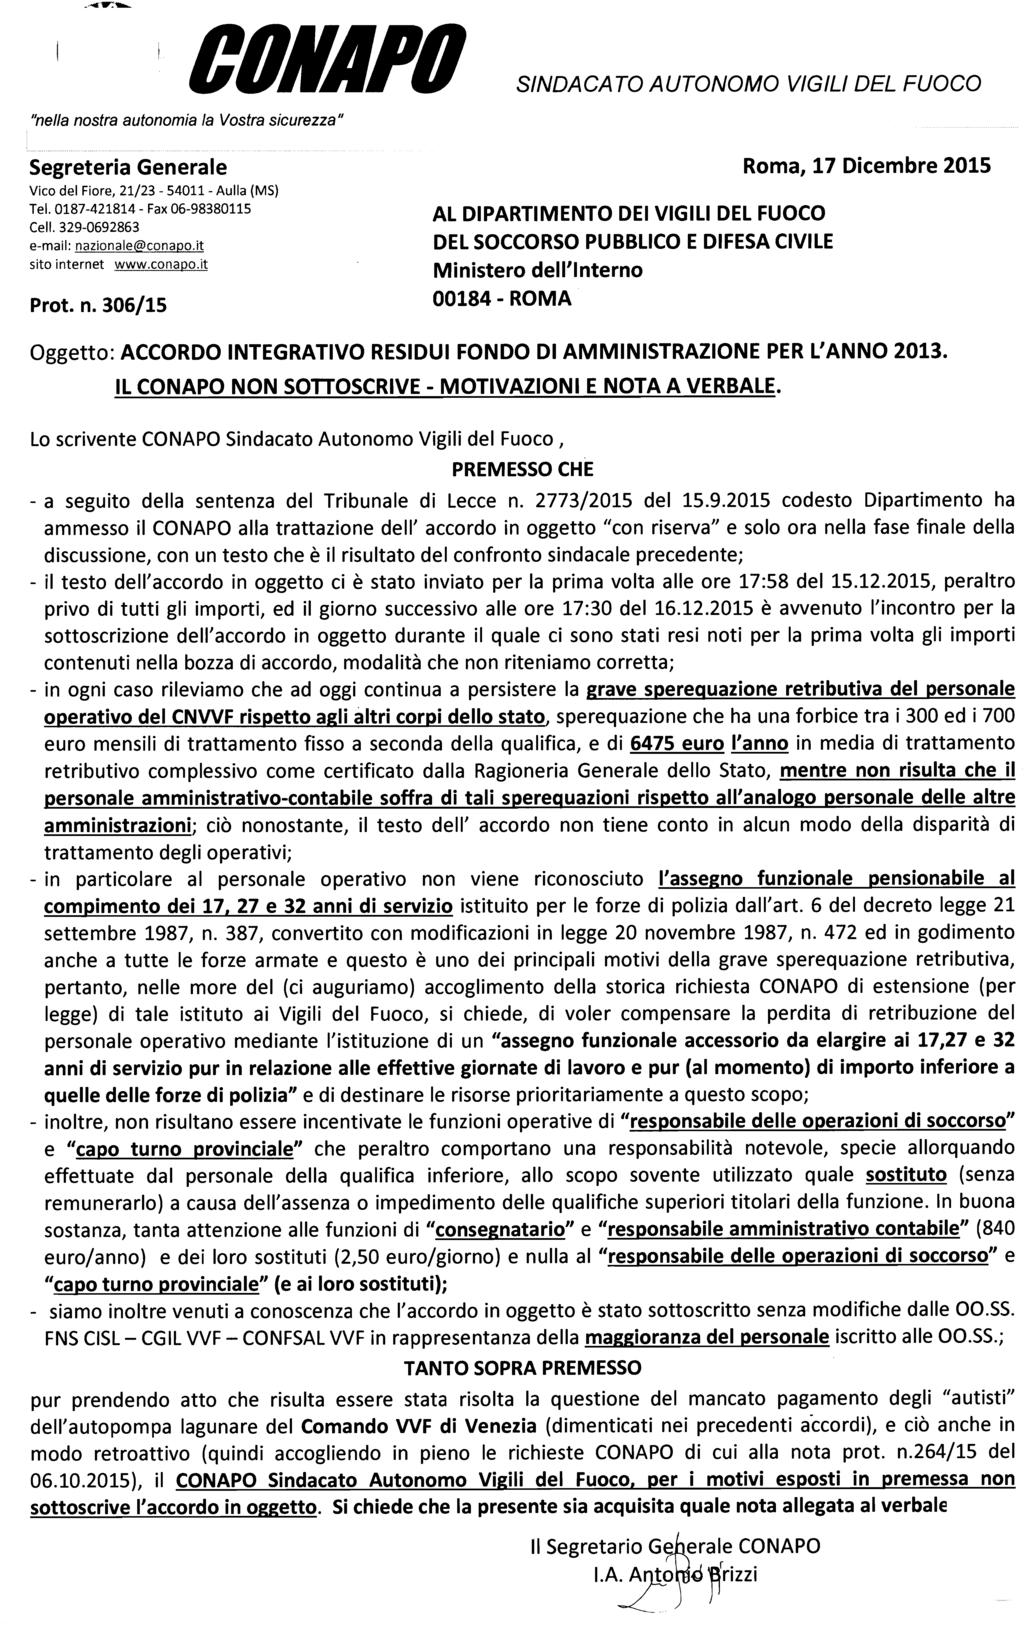 COKAPO SINDACA "nella nostra autonomia la Vostra sicurezza" TO AUTONOMO VIGILI DEL FUOCO Segreteria Generale Roma, 17 Dicembre 2015 Vico del Fiore, 21/23-54011 - Aulla (MS) Tel.